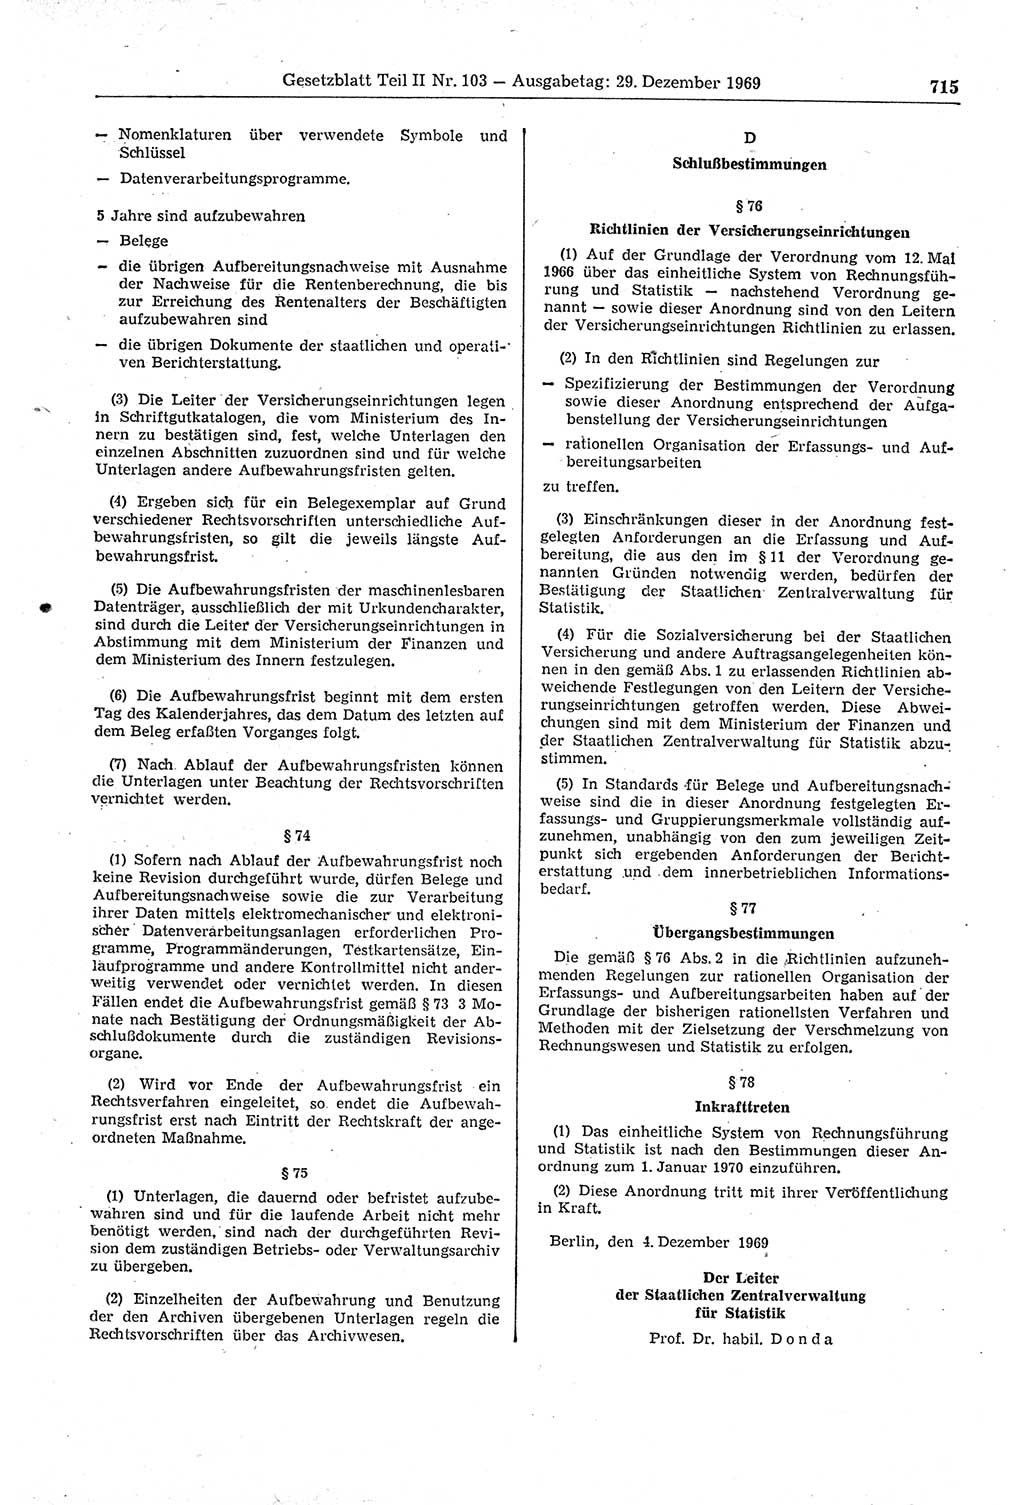 Gesetzblatt (GBl.) der Deutschen Demokratischen Republik (DDR) Teil ⅠⅠ 1969, Seite 715 (GBl. DDR ⅠⅠ 1969, S. 715)